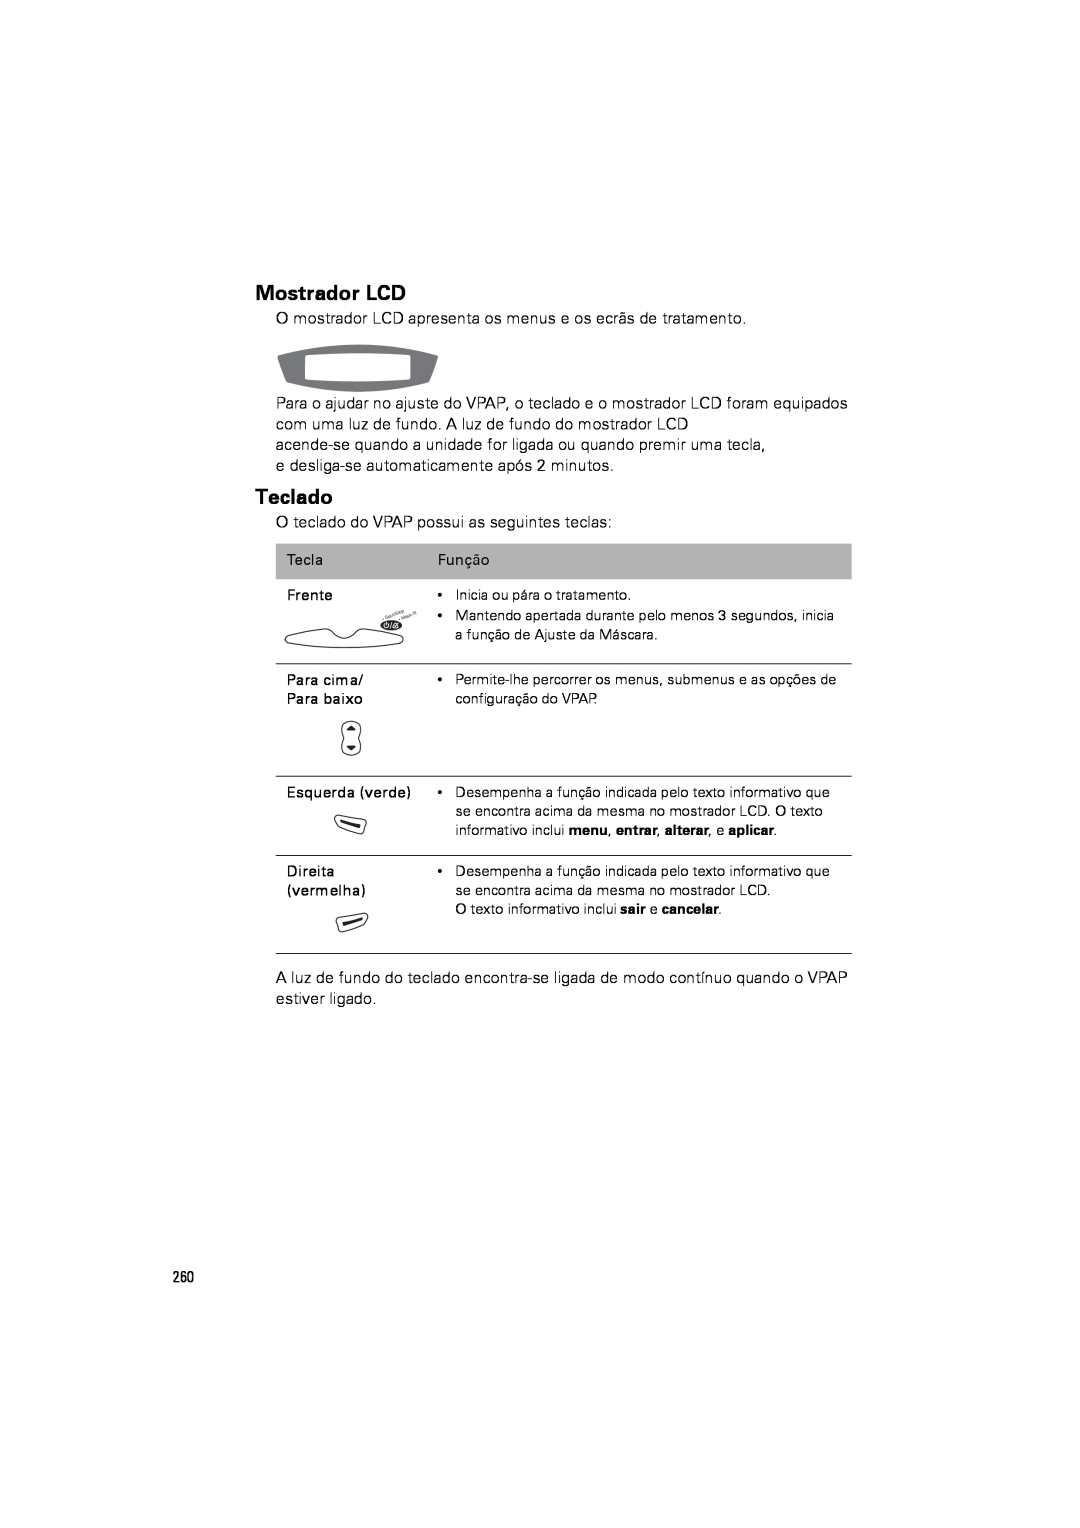 ResMed III & III ST user manual Mostrador LCD, Teclado 